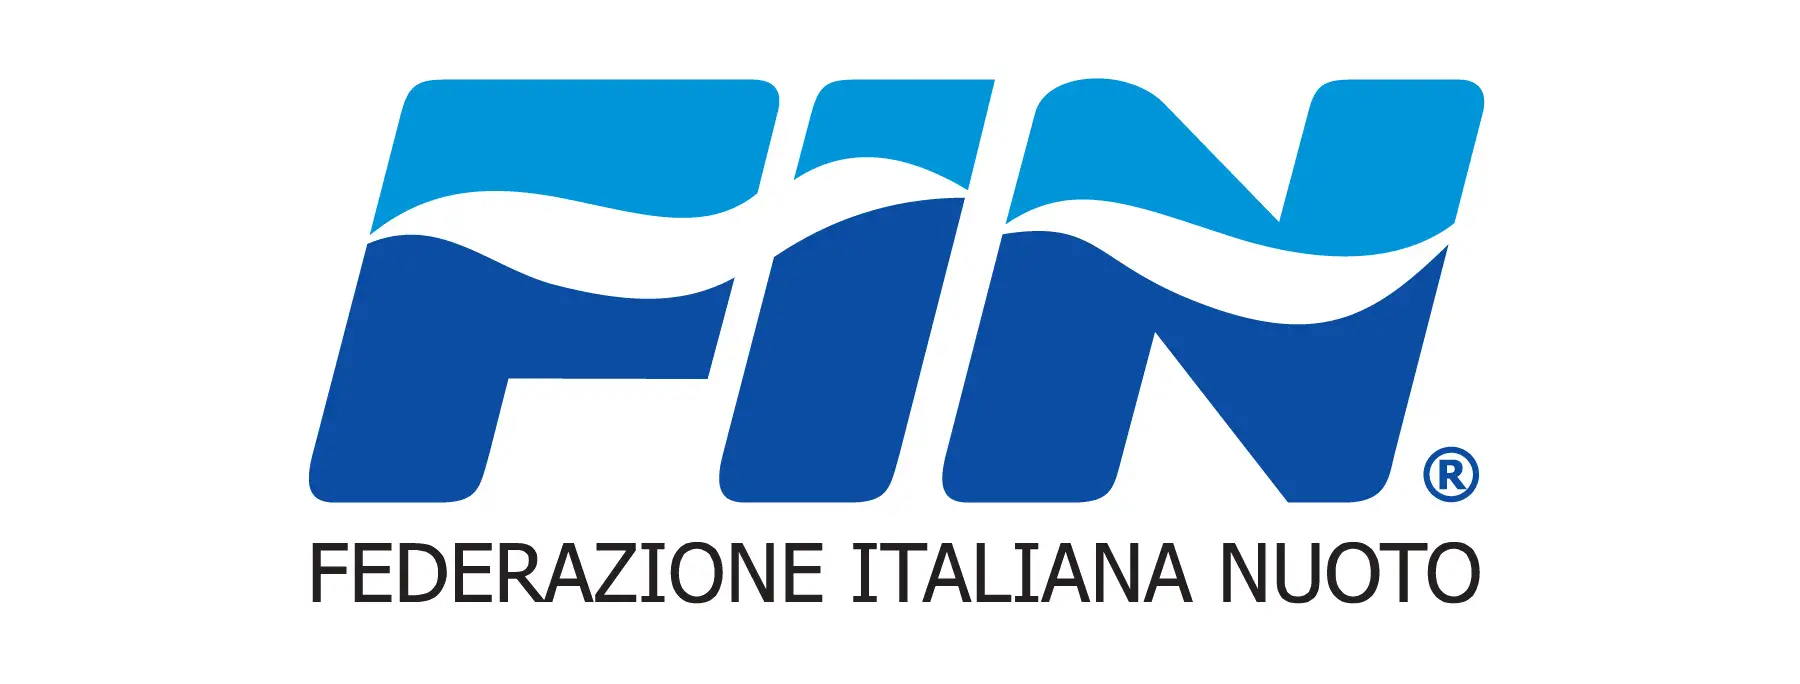 Federazione Italiana Nuoto